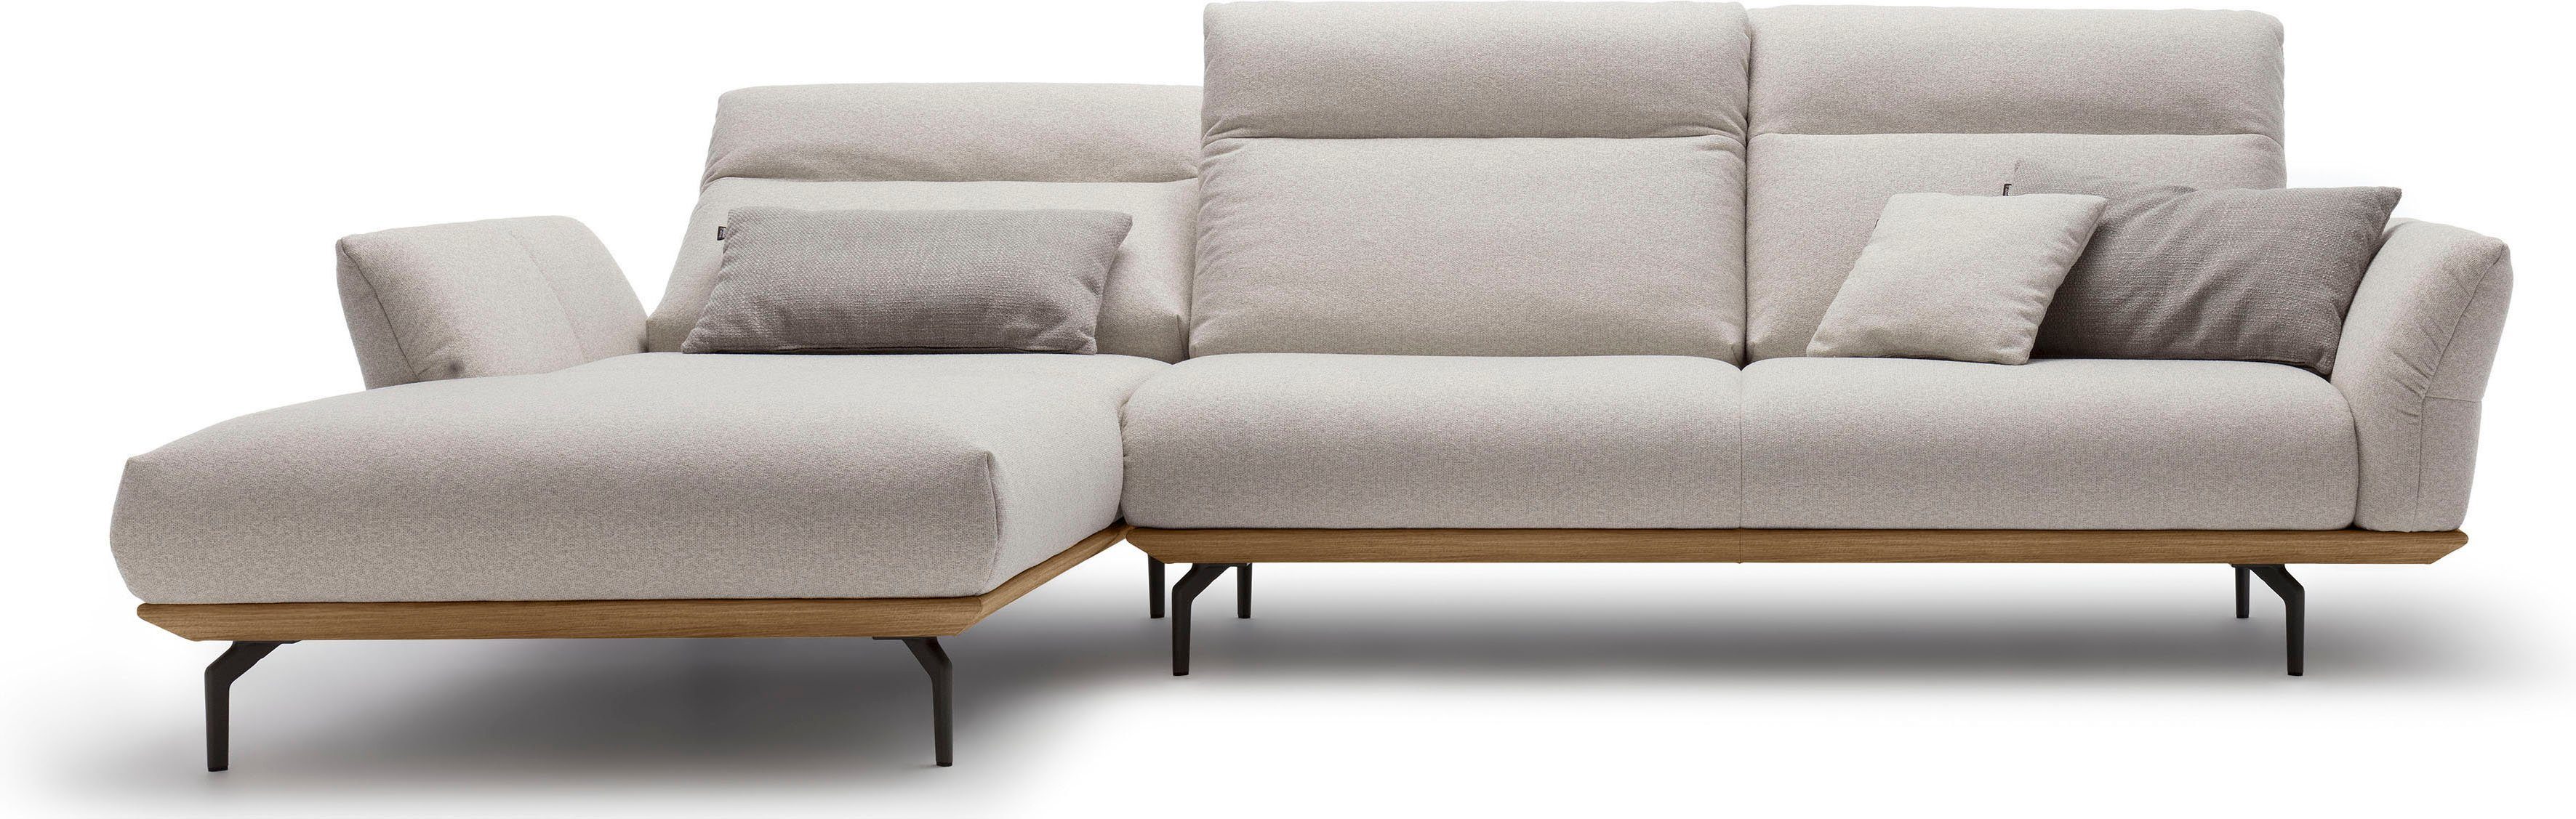 huelsta sofa hoekbank hs.460 sokkel in walnotenhout, onderstel in umbra grijs, breedte 318 cm grijs